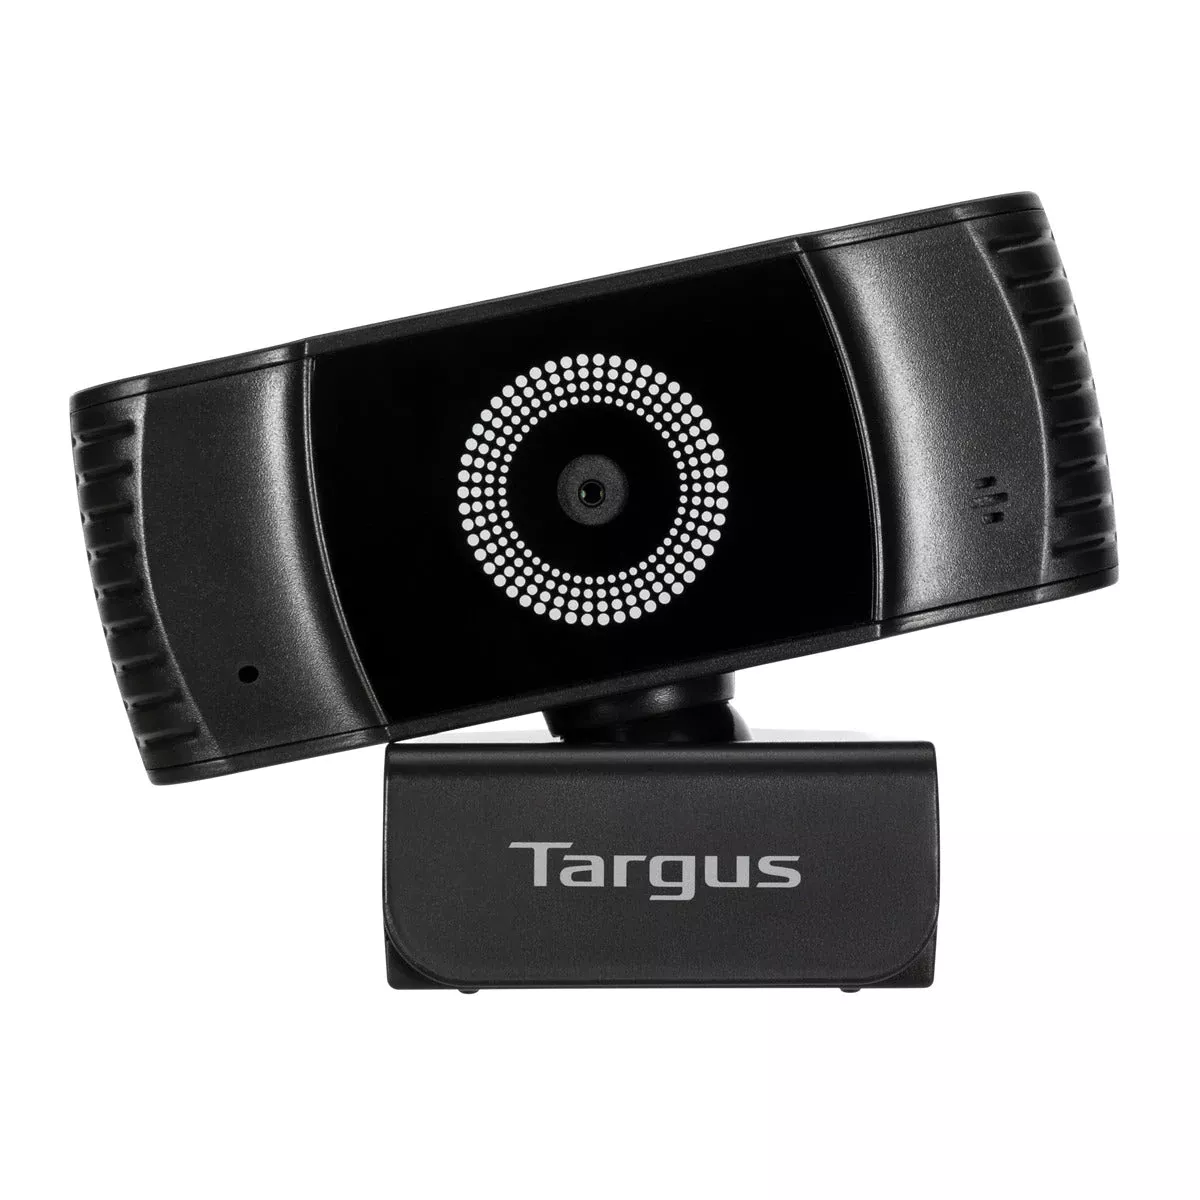 Achat TARGUS Webcam Plus Full HD 1080p Webcam with sur hello RSE - visuel 7